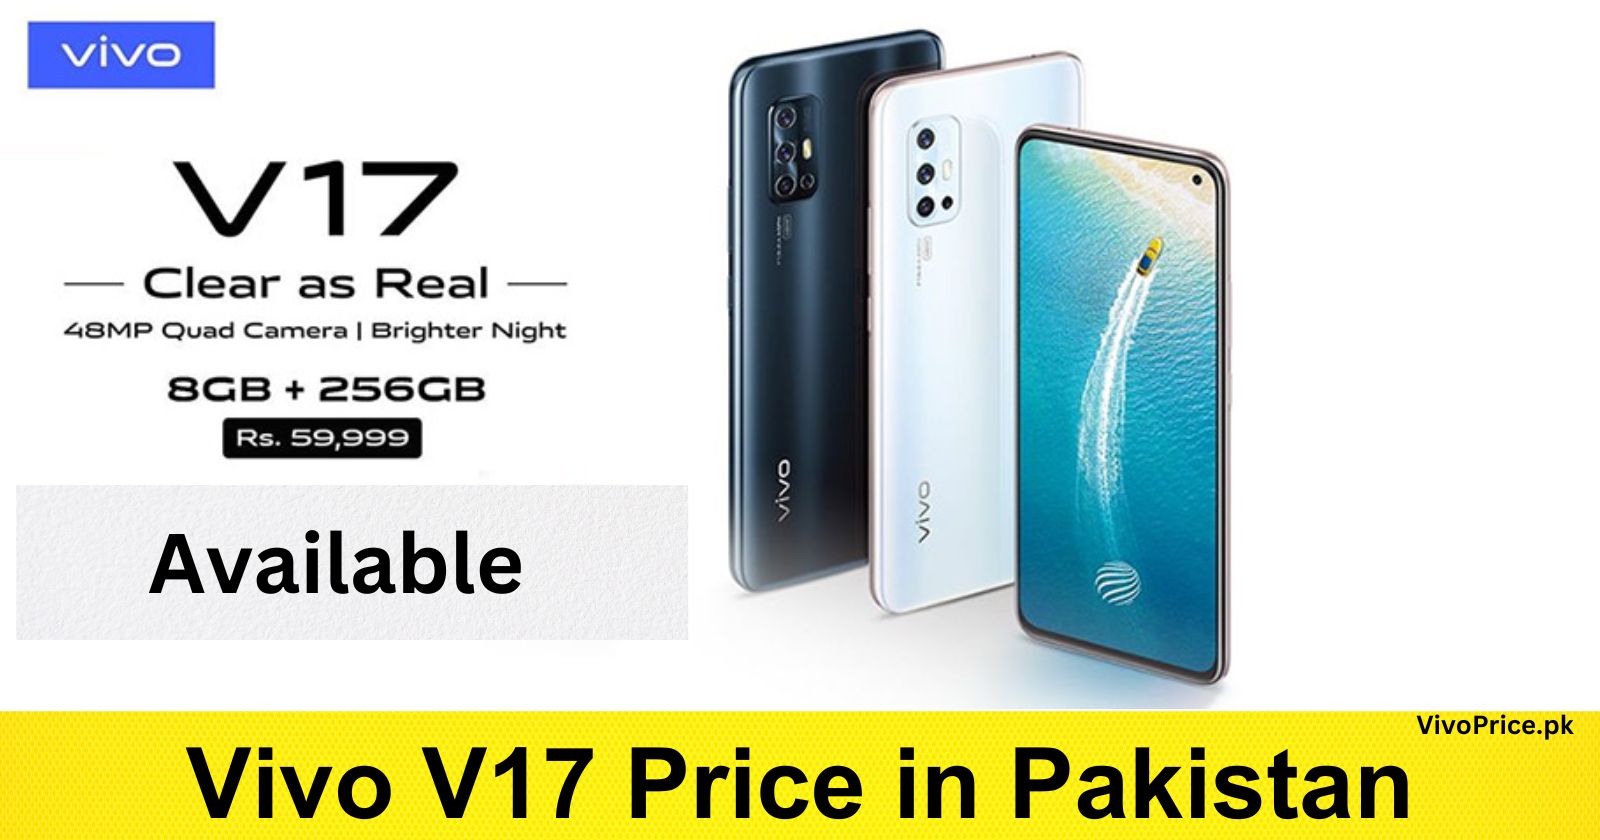 Vivo V17 Price in Pakistan | VivoPrice.pk